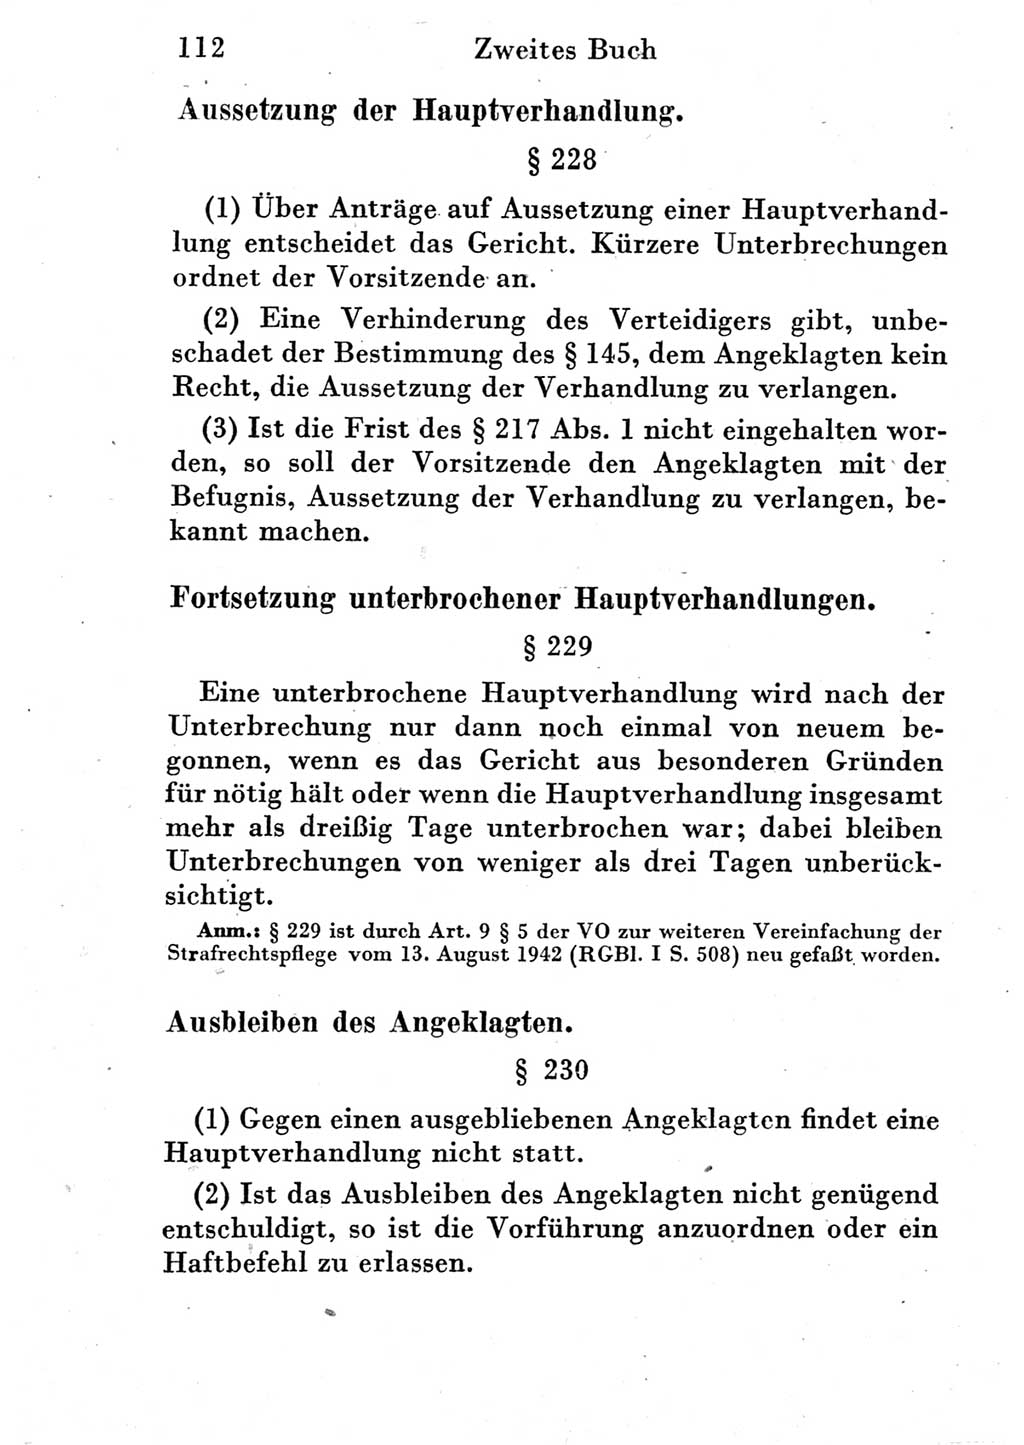 Strafprozeßordnung (StPO), Gerichtsverfassungsgesetz (GVG) und zahlreiche Nebengesetze der Deutschen Demokratischen Republik (DDR) 1950, Seite 112 (StPO GVG Ges. DDR 1950, S. 112)